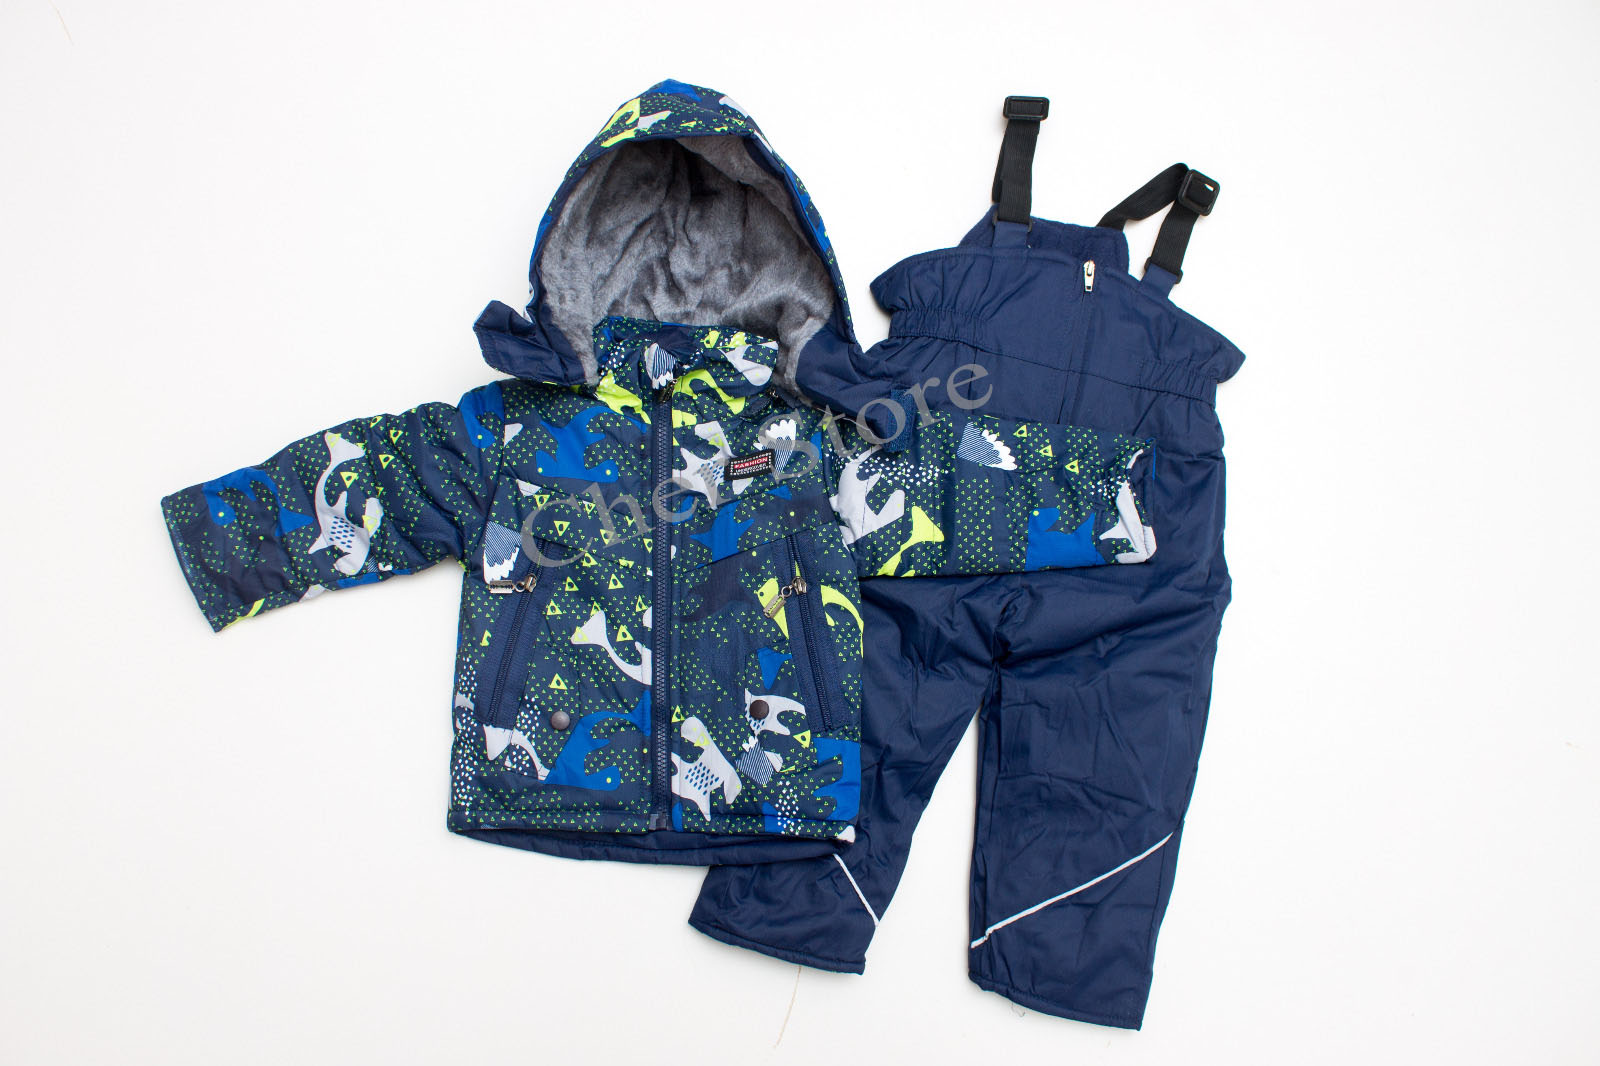 heart Conversational Cafe Costum de ski pentru copii – 12 luni (Dino Blue/Green) | Cher Store